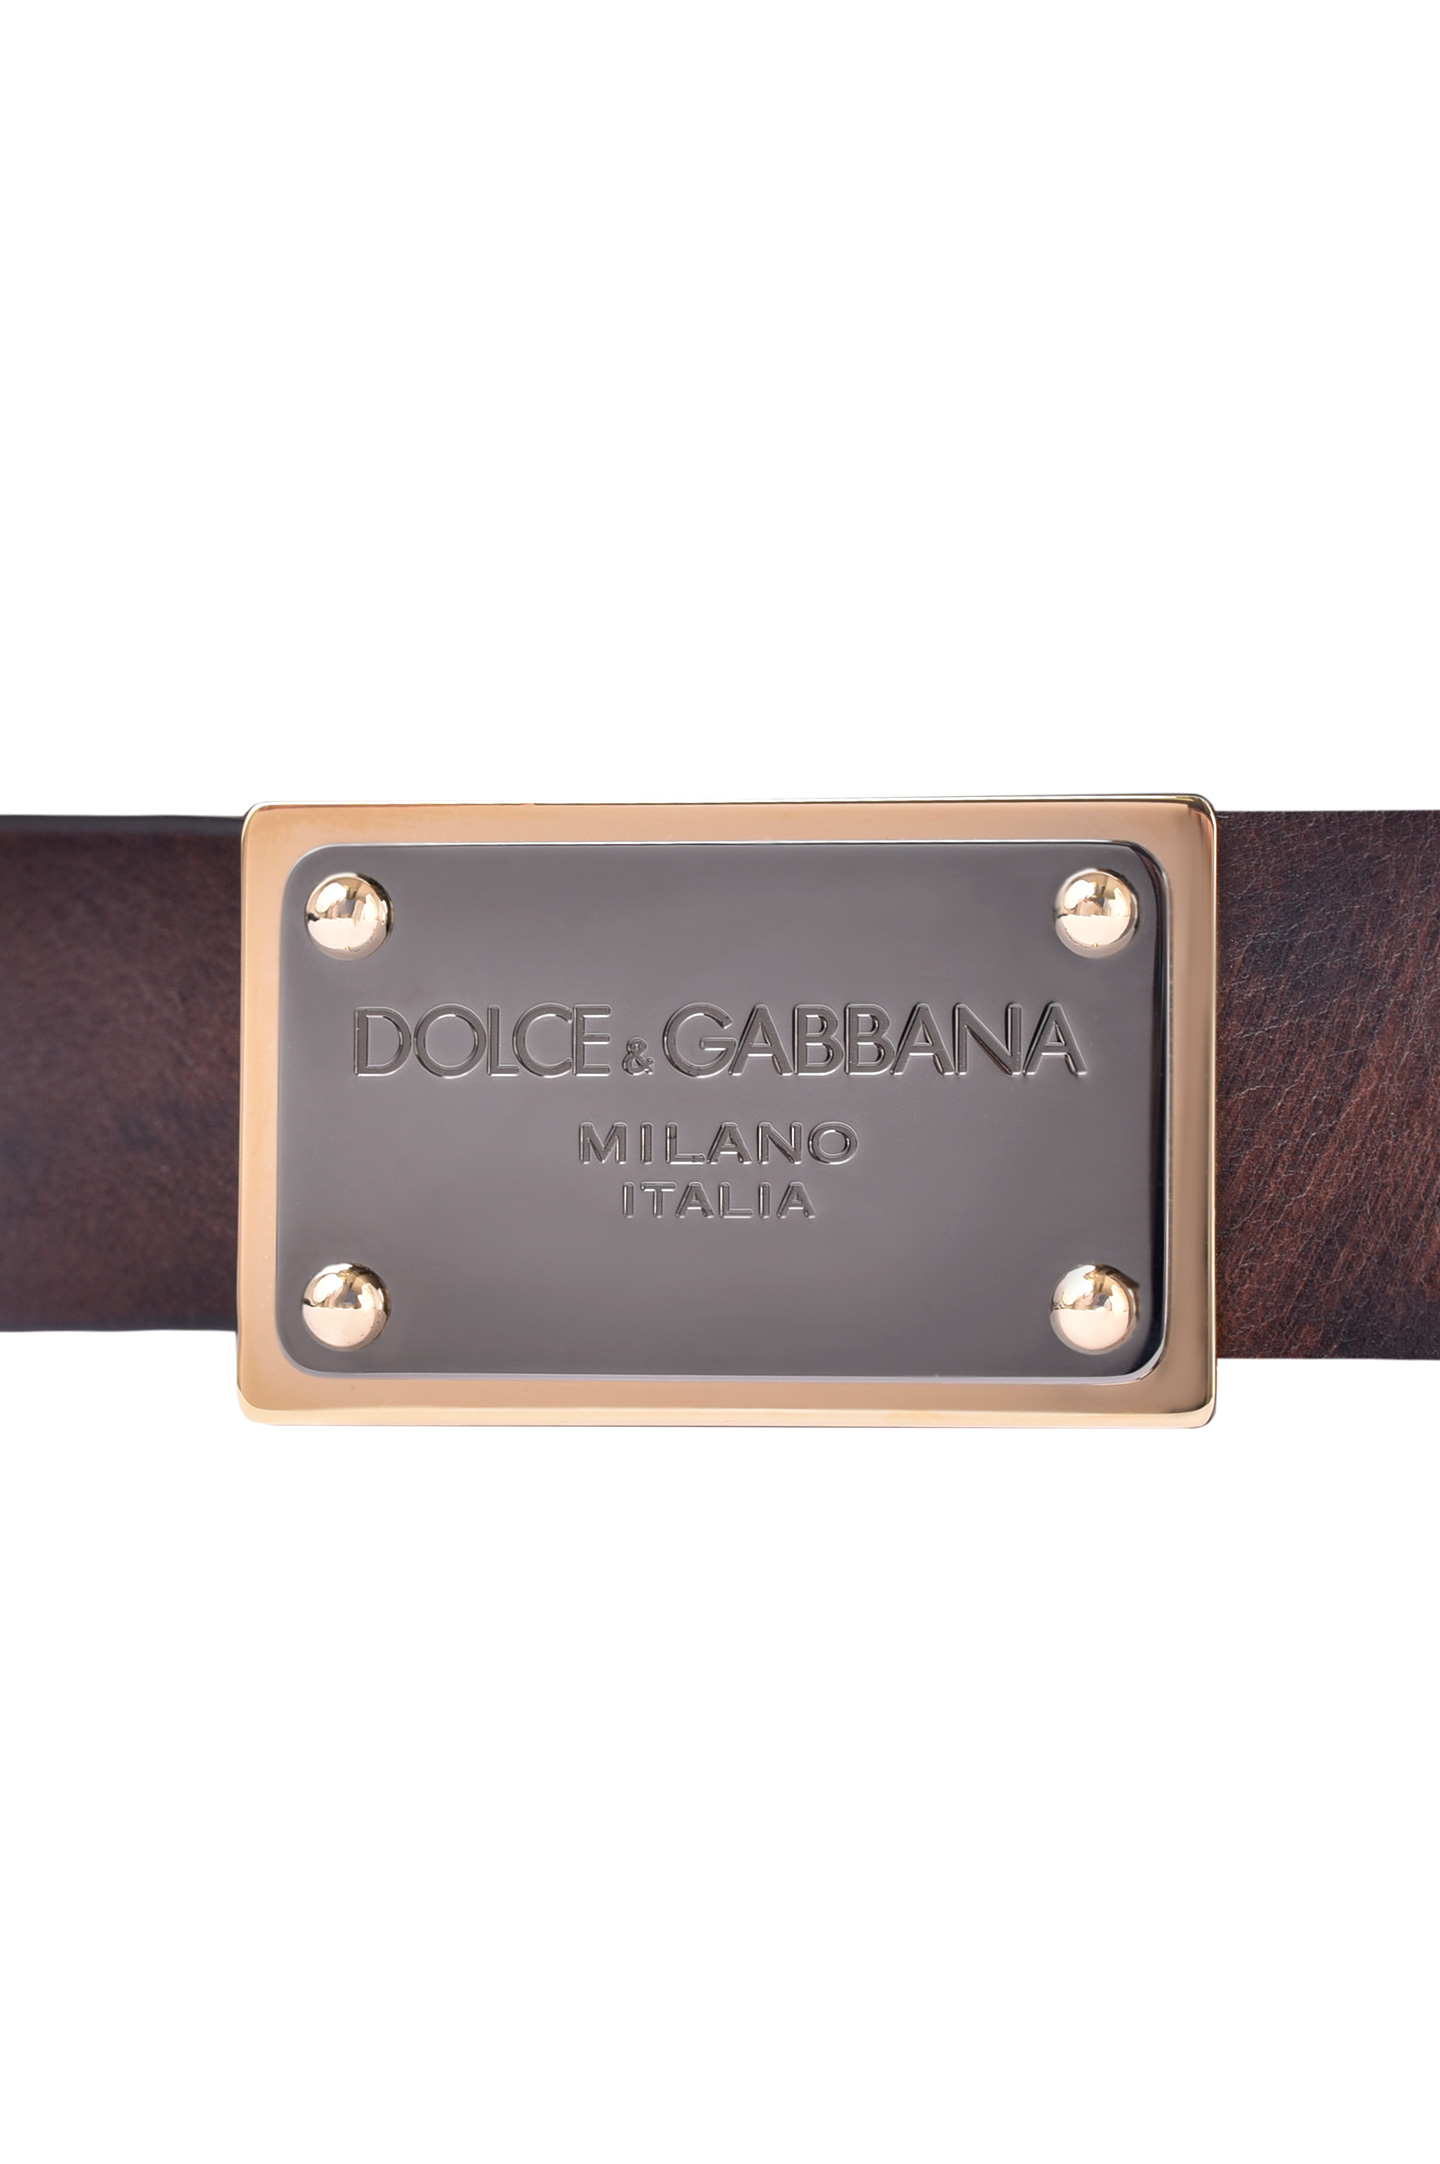 Ремень DOLCE & GABBANA BC4639 AX535, цвет: Коричневый, Мужской